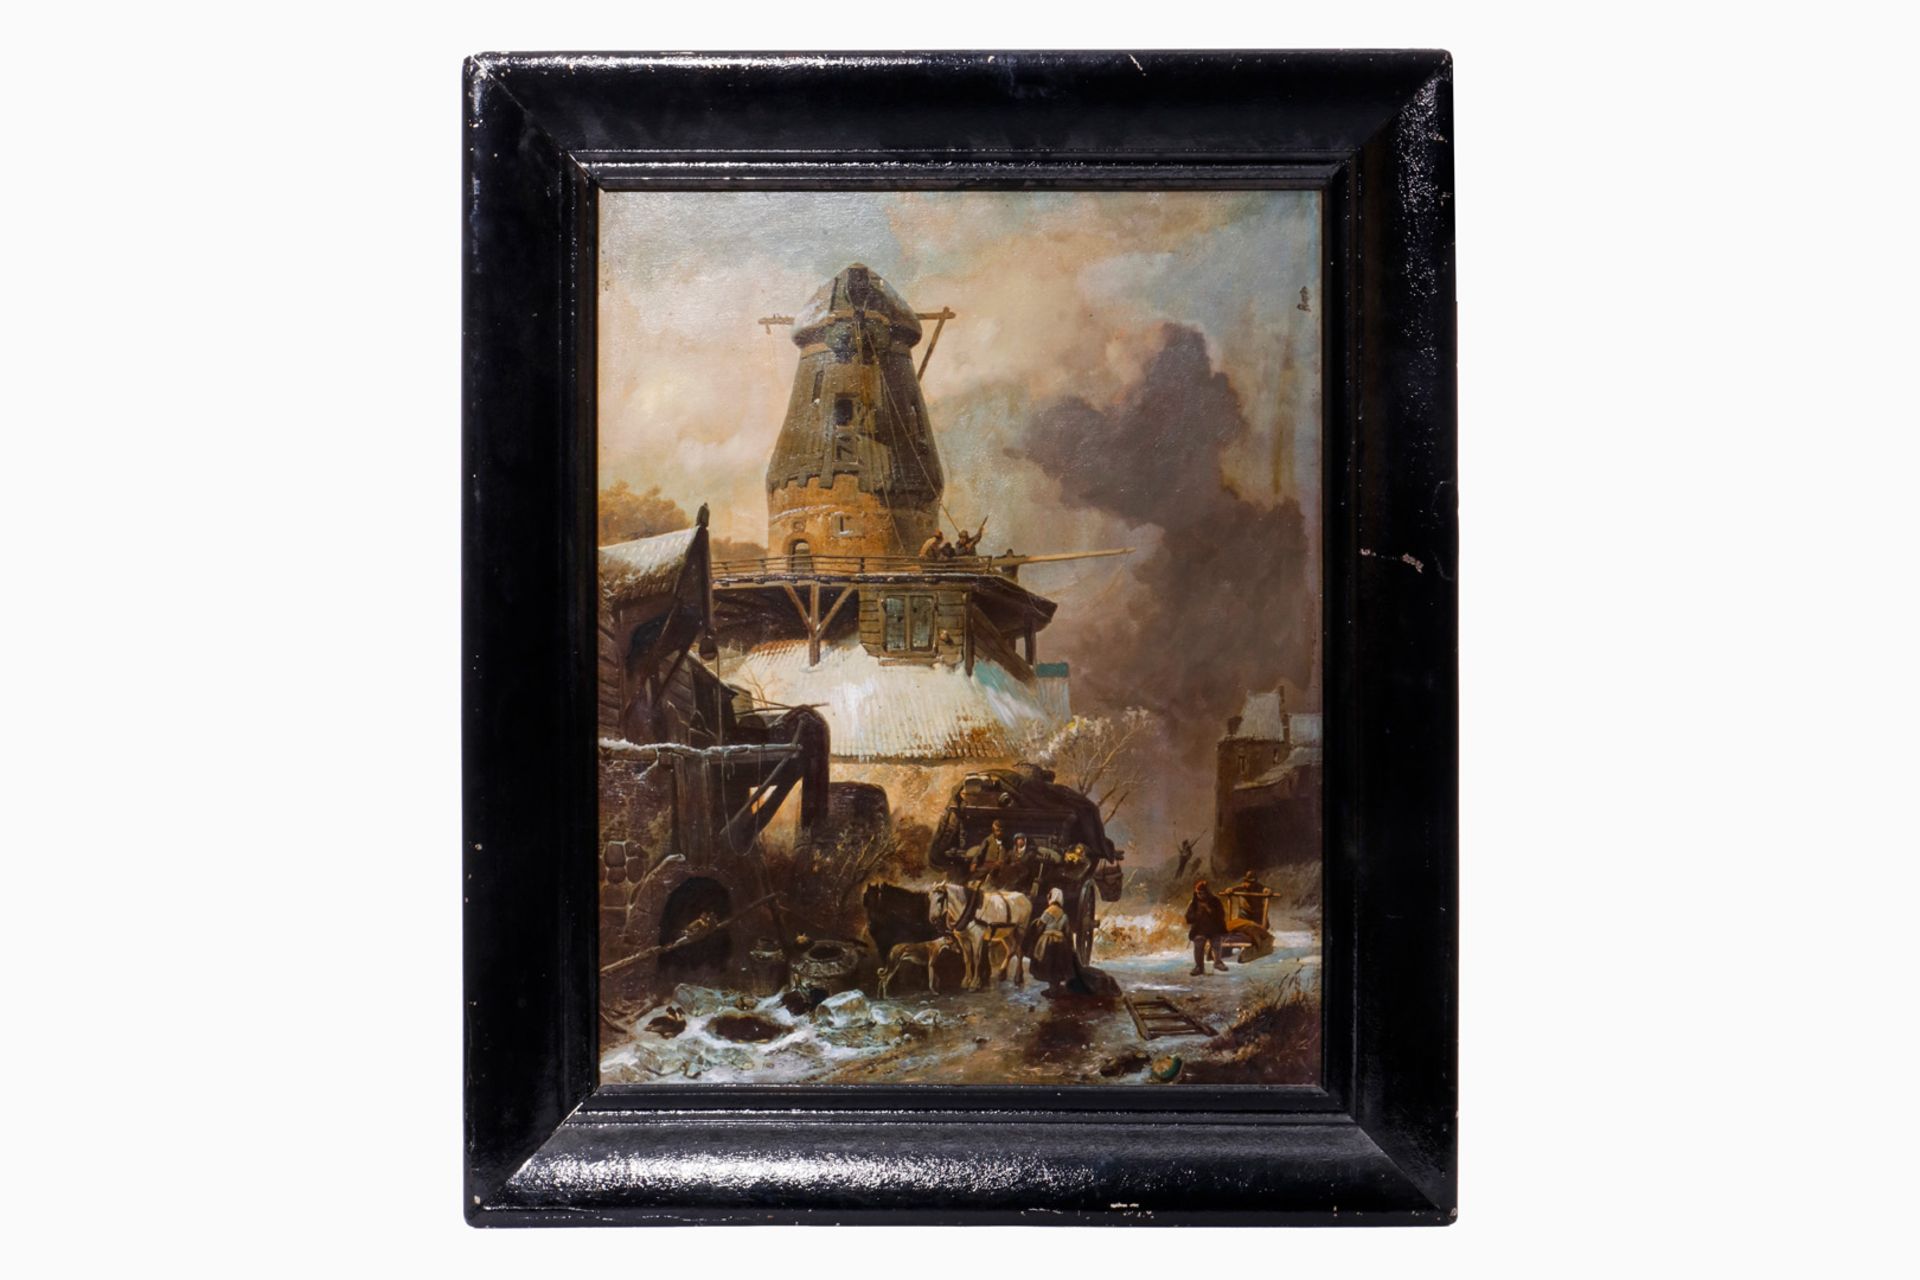 Gemälde eines alten Meisters als Druck in Manier eines Ölbildes, gerahmt, 63x74